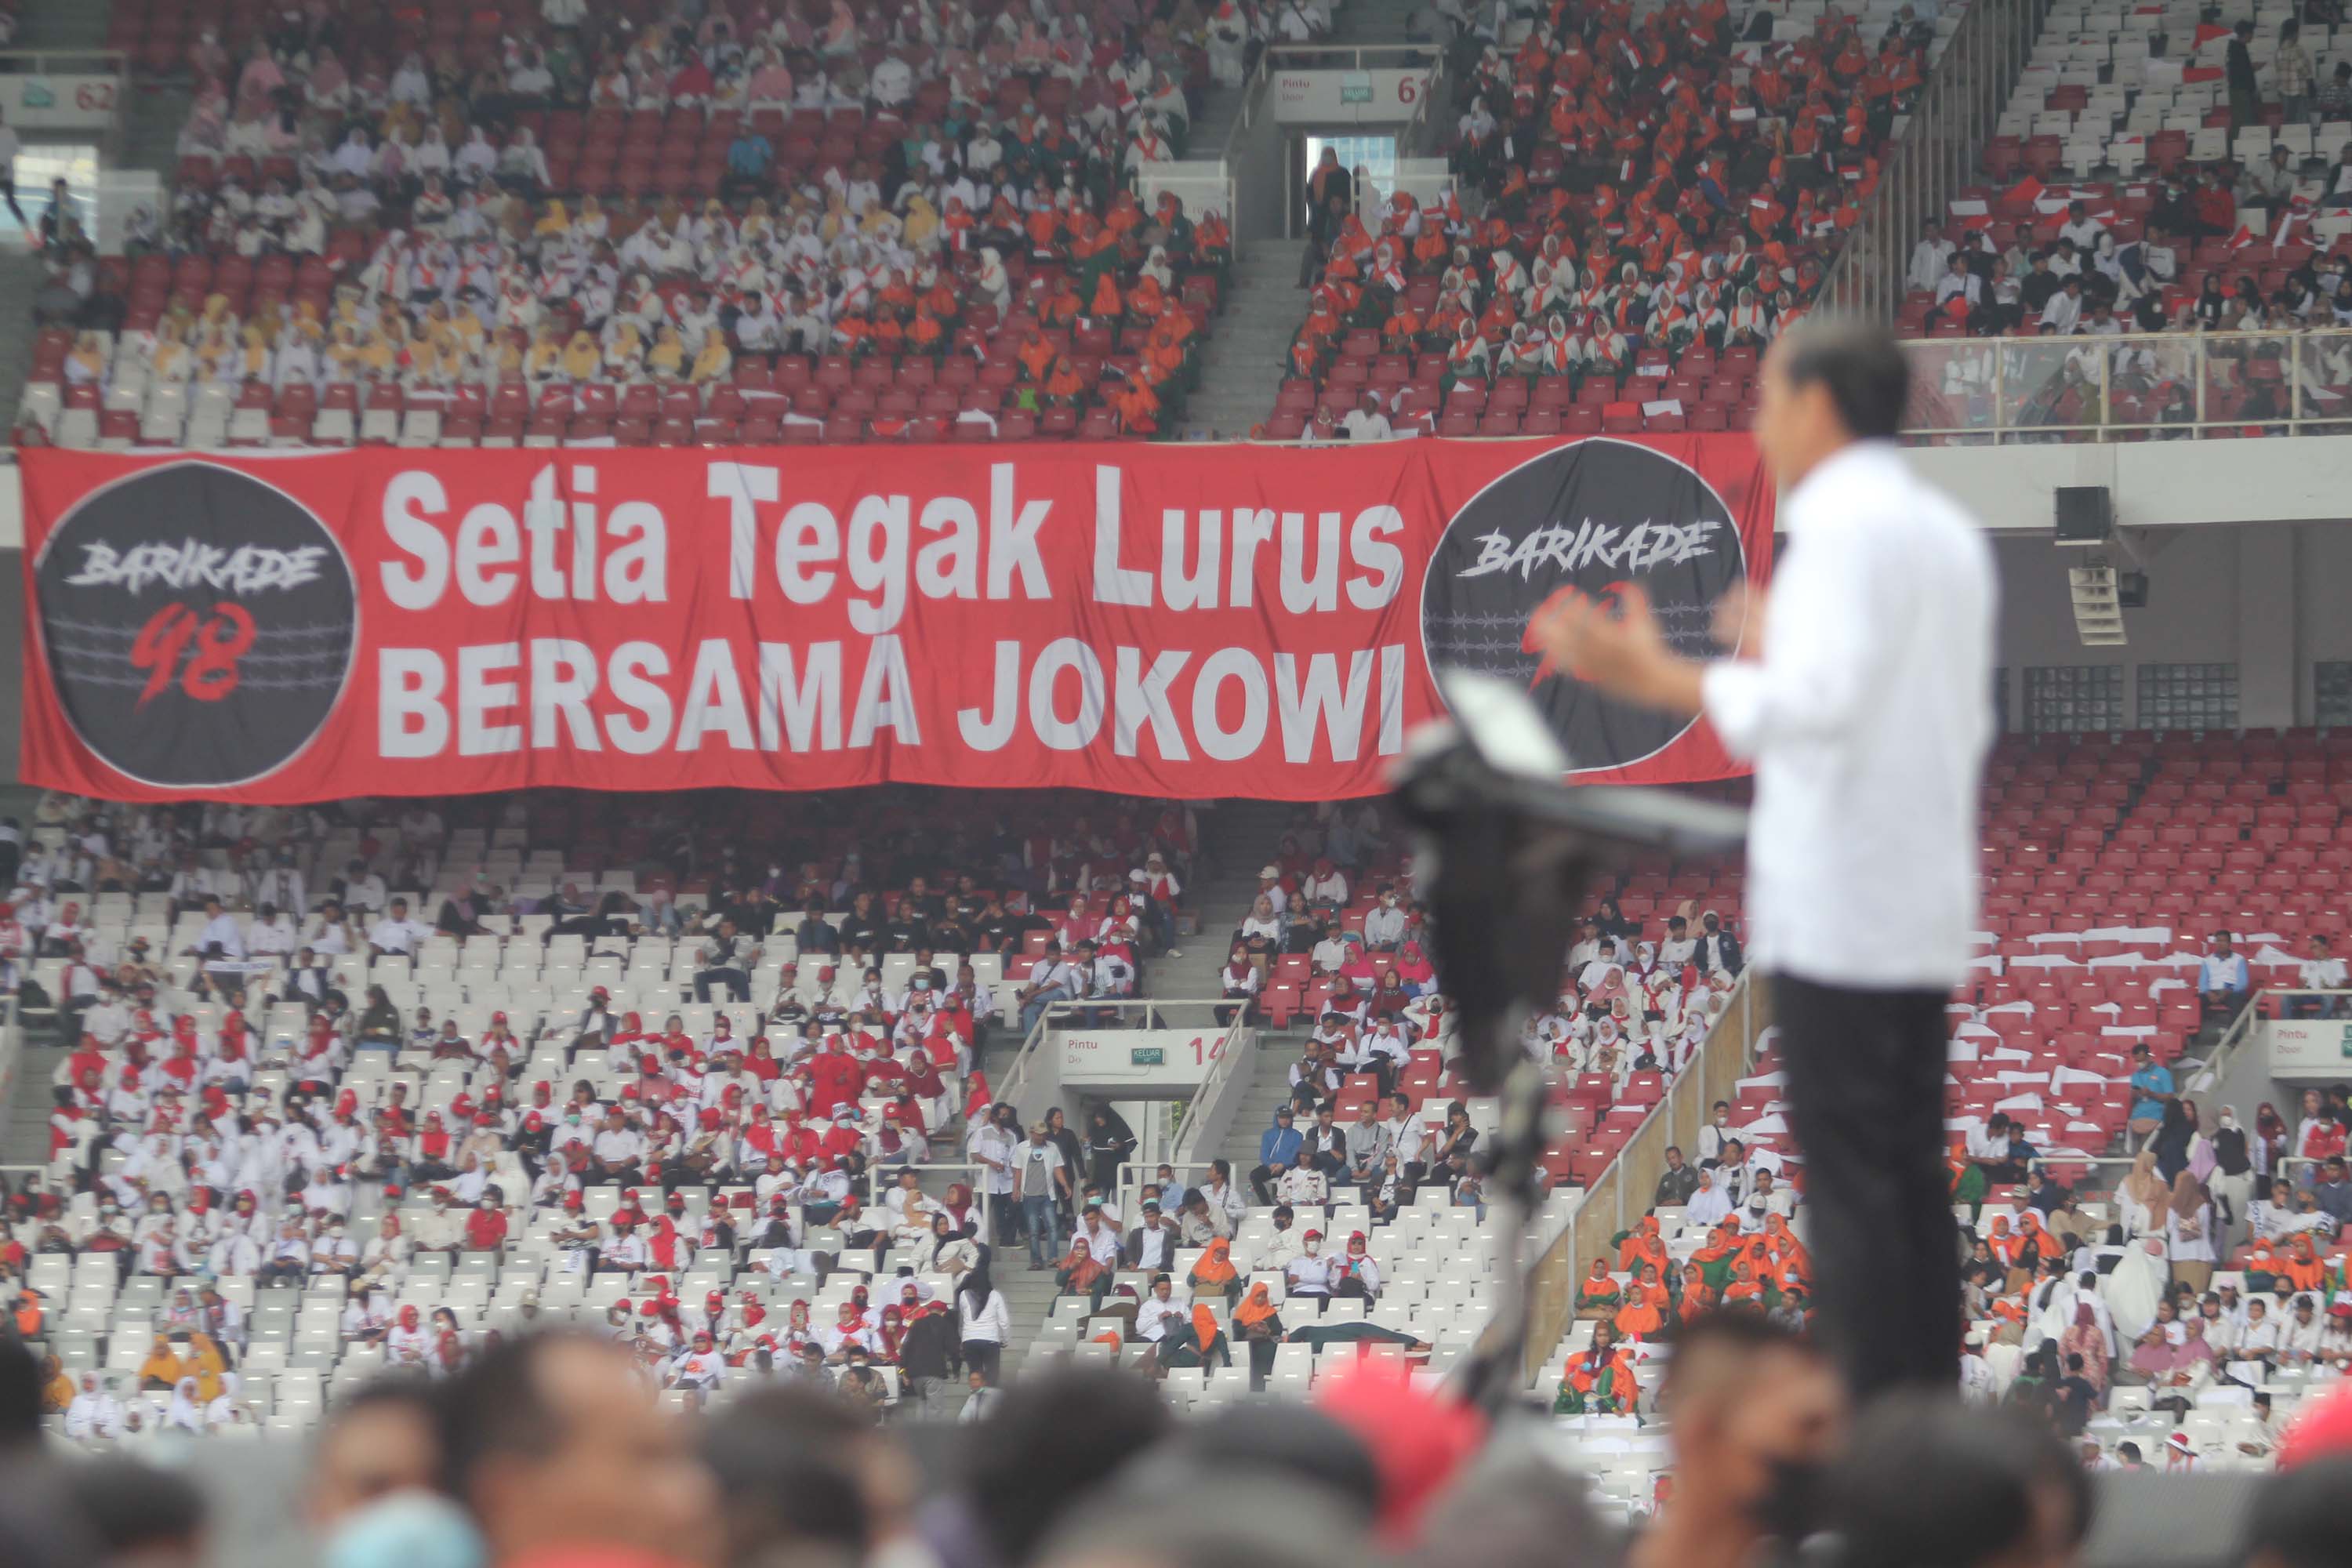 Presiden Jokowi menghadiri gerakan nusantara bersatu di GBK (Ashar/SinPo.id)